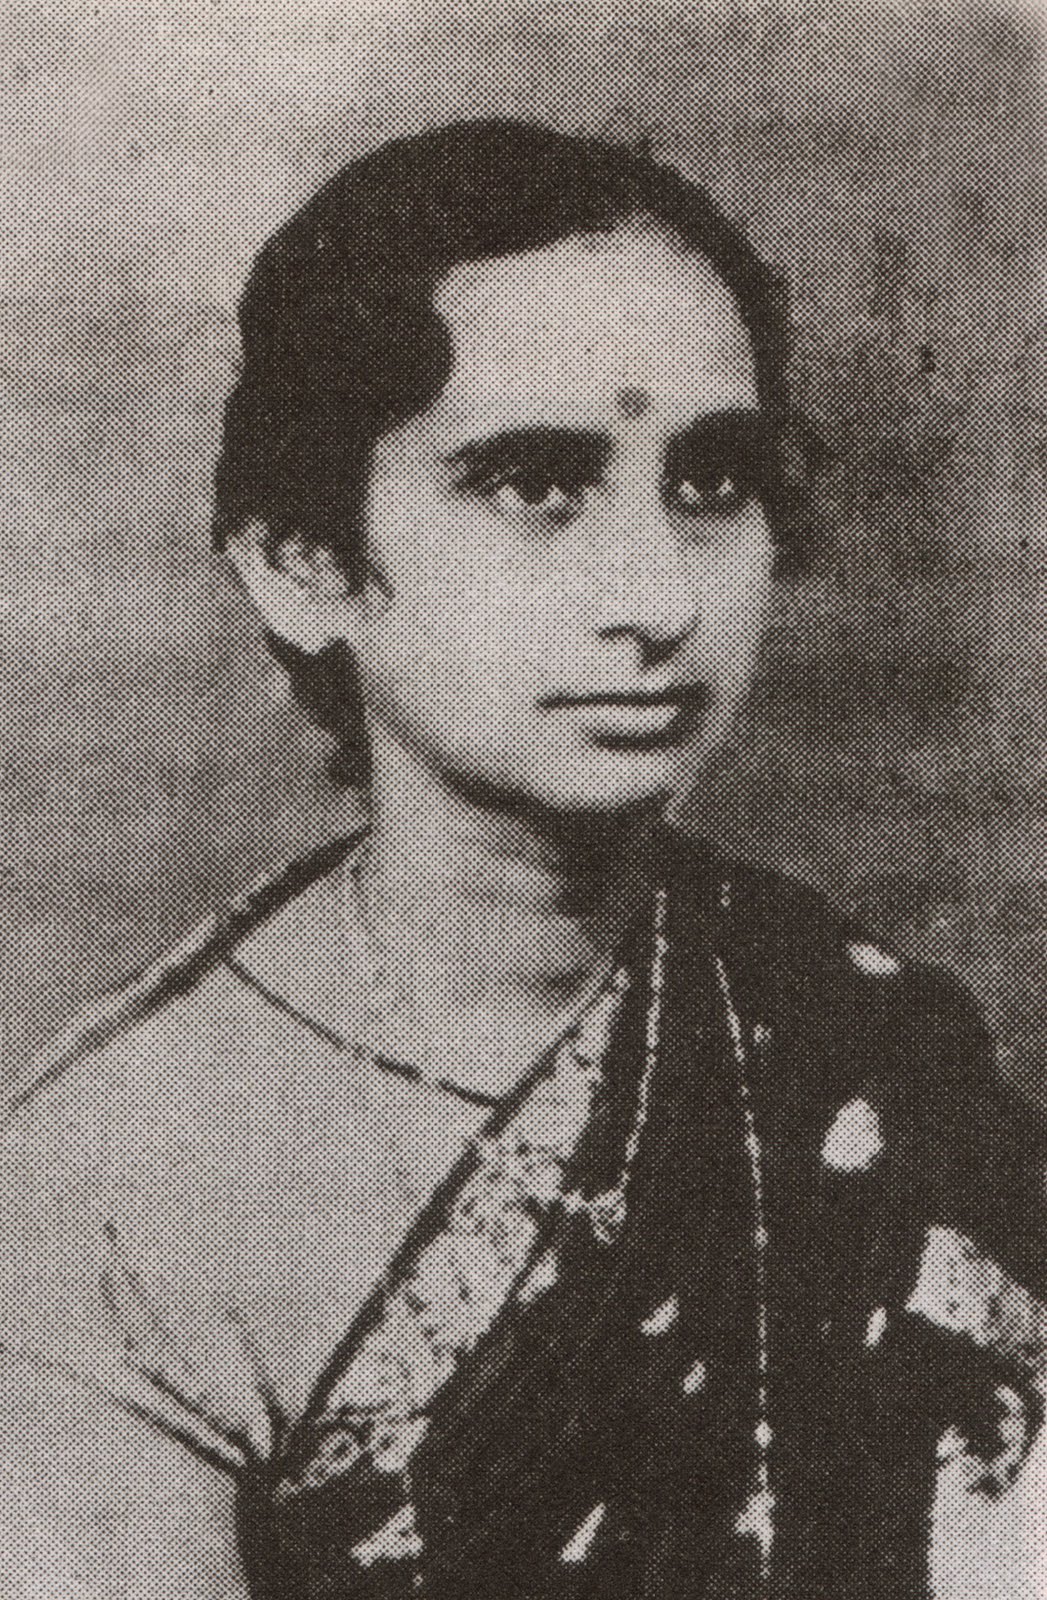 அன்னை மீனாம்பாள் சிவராஜ்